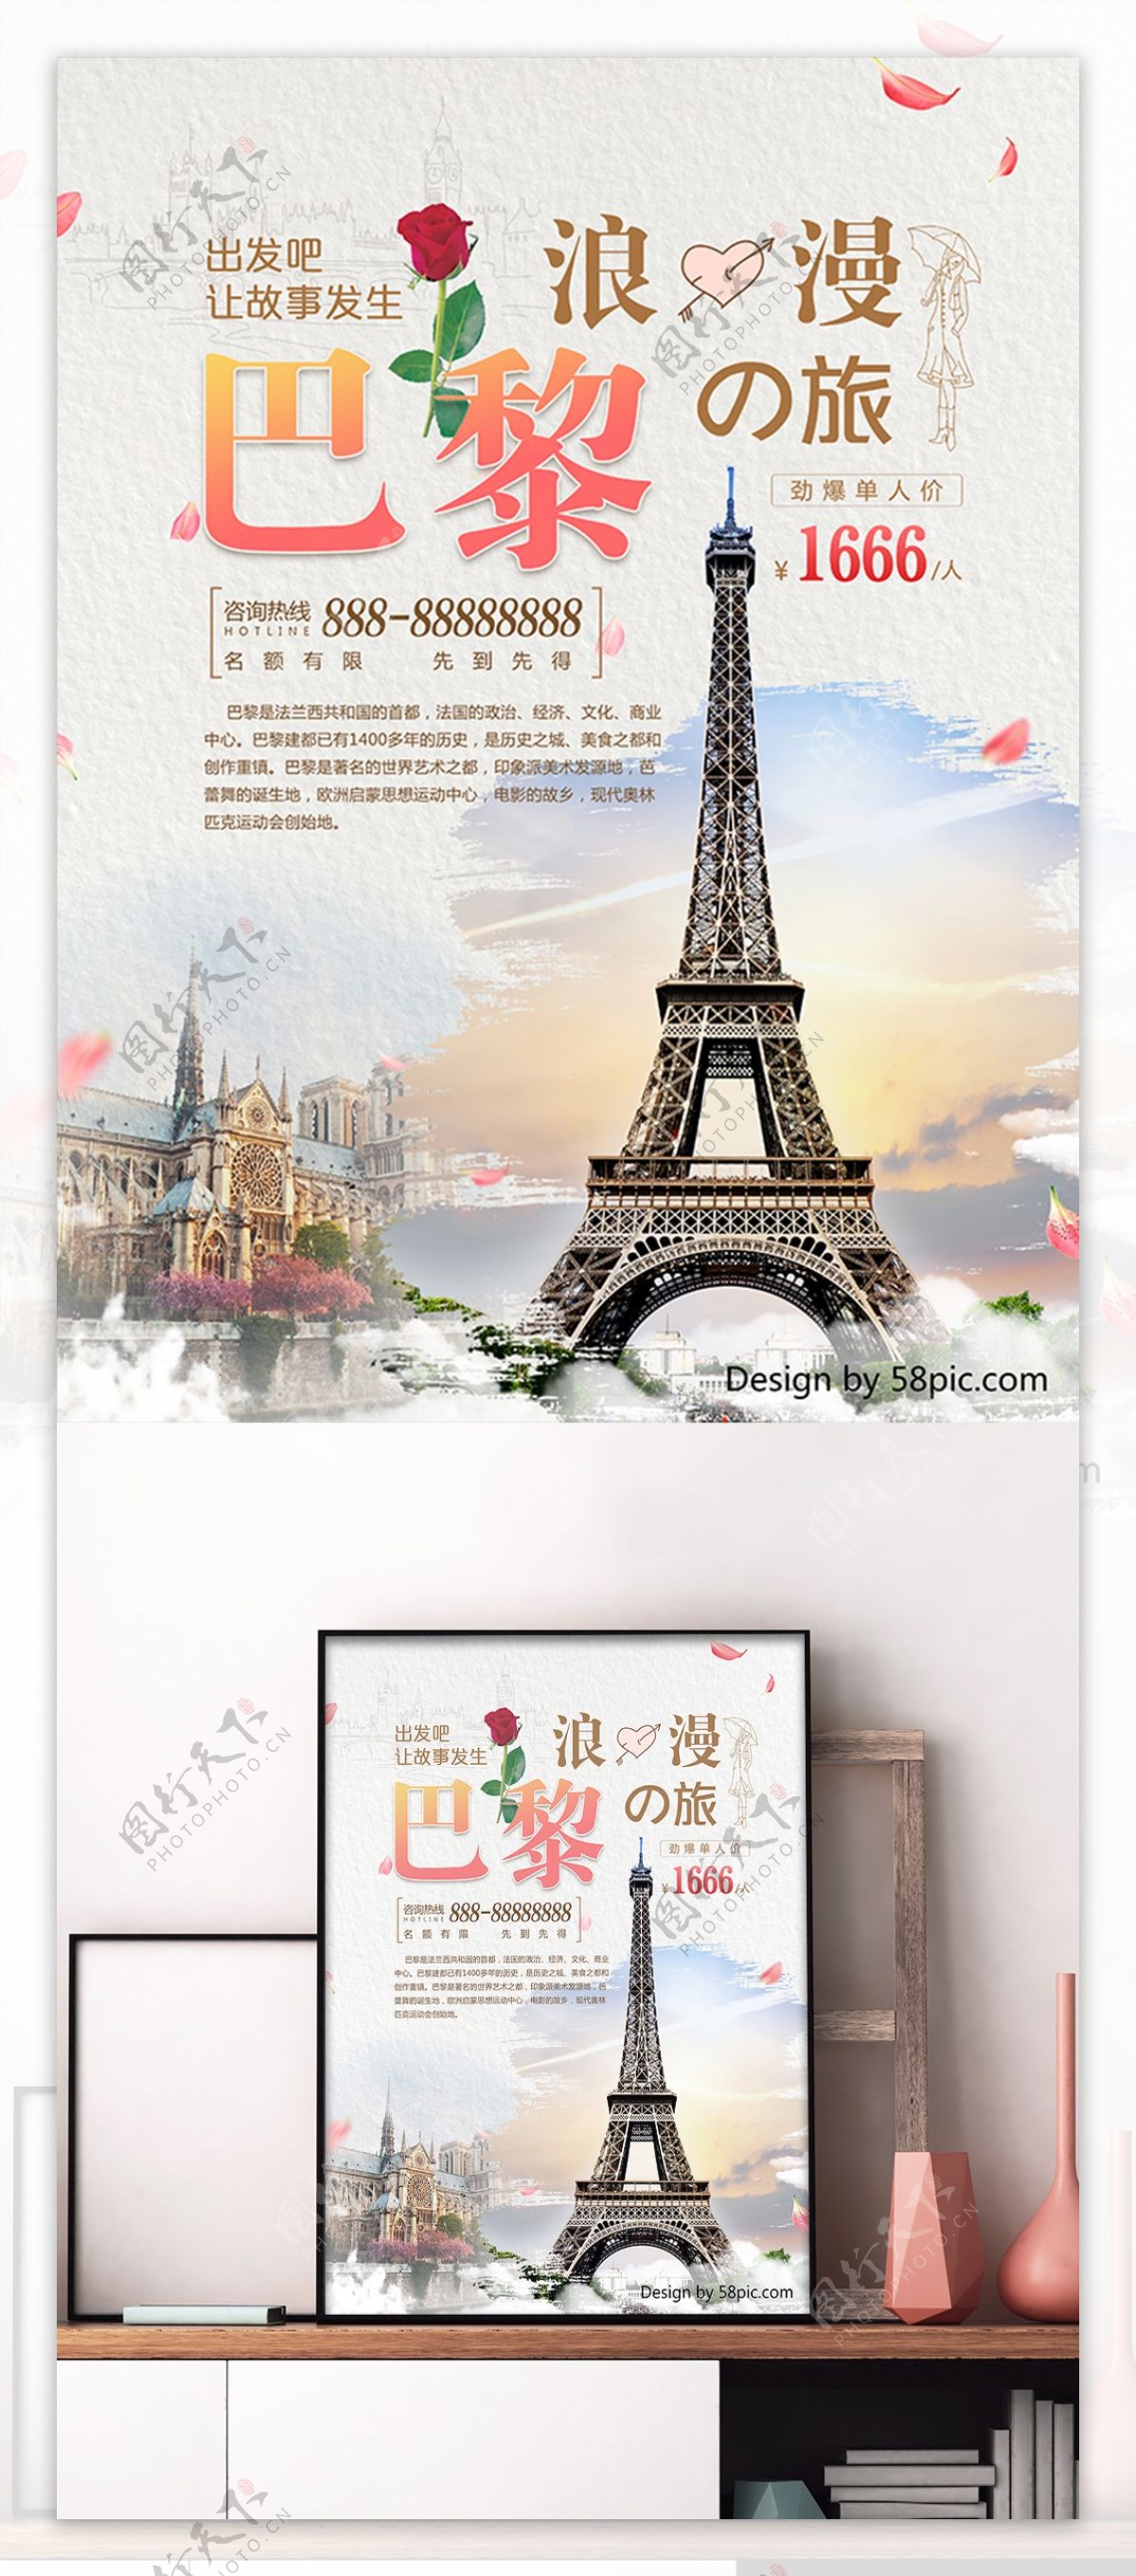 白色浪漫巴黎旅游旅行社埃菲尔铁塔旅游海报